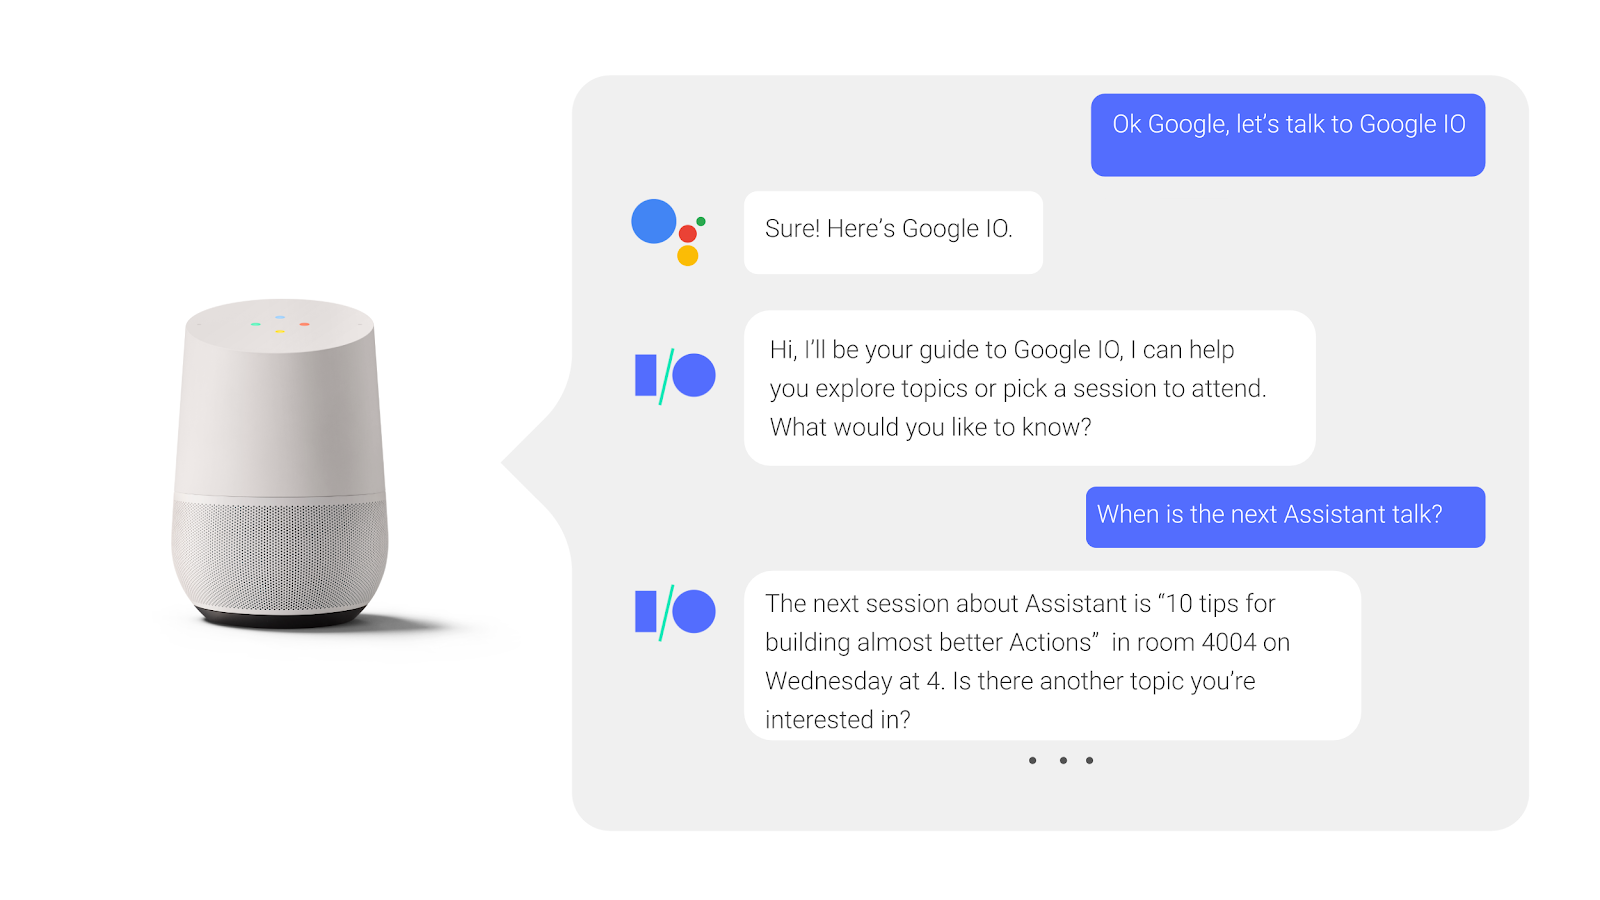 В переписке с Google Assistant пользователь спрашивает и получает ответ о том, когда происходит сеанс конференции.